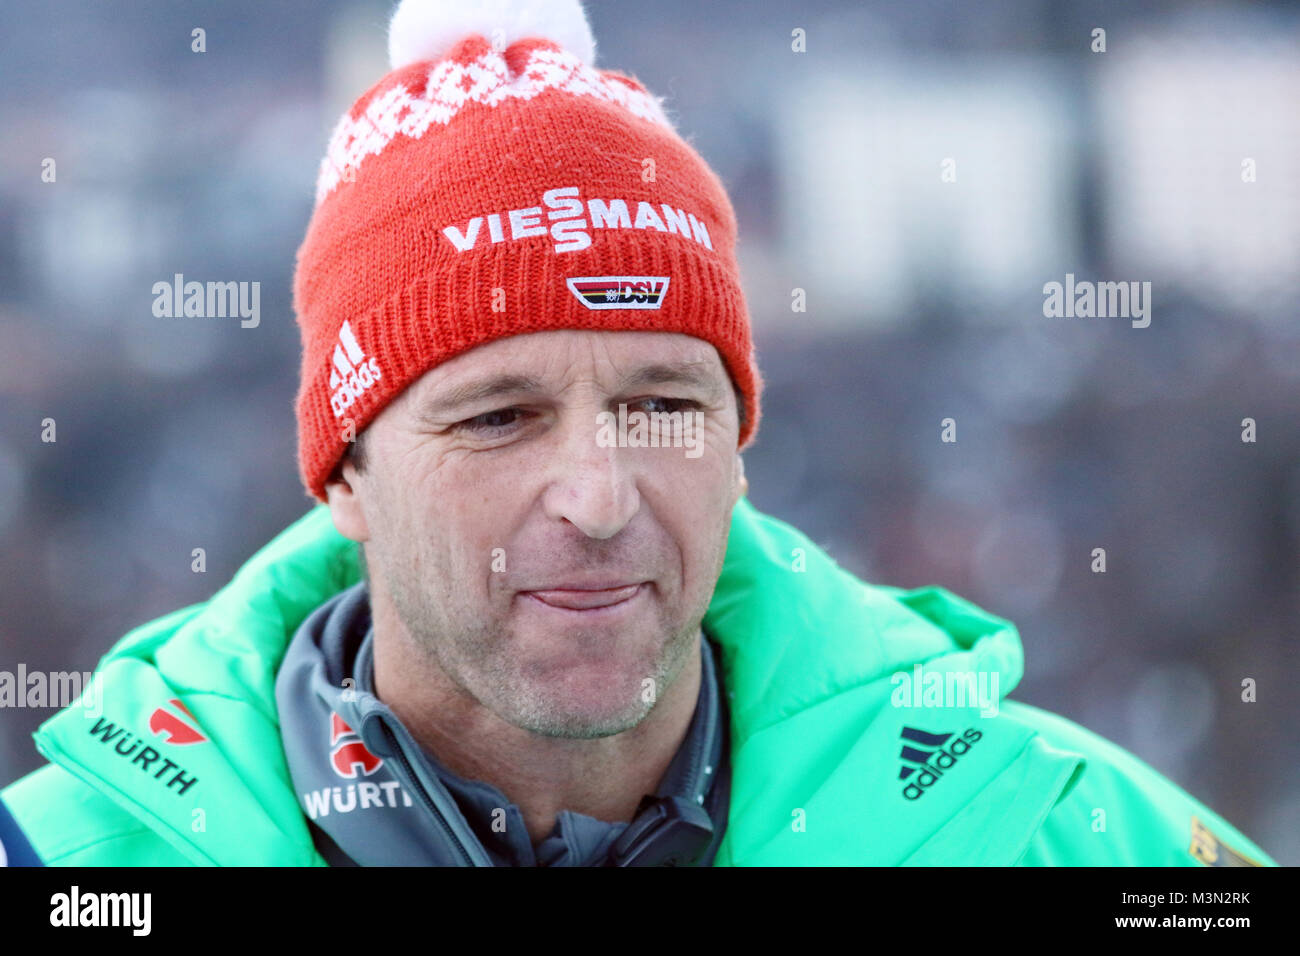 Bundestrainer Werner Schuster (Skispringen), lachend / laechelnd / gut gelaunt / grinst / grinsend / Qualifikation Neujahrsskispringen Garmisch-Partenkirchen 2016 Foto Stock